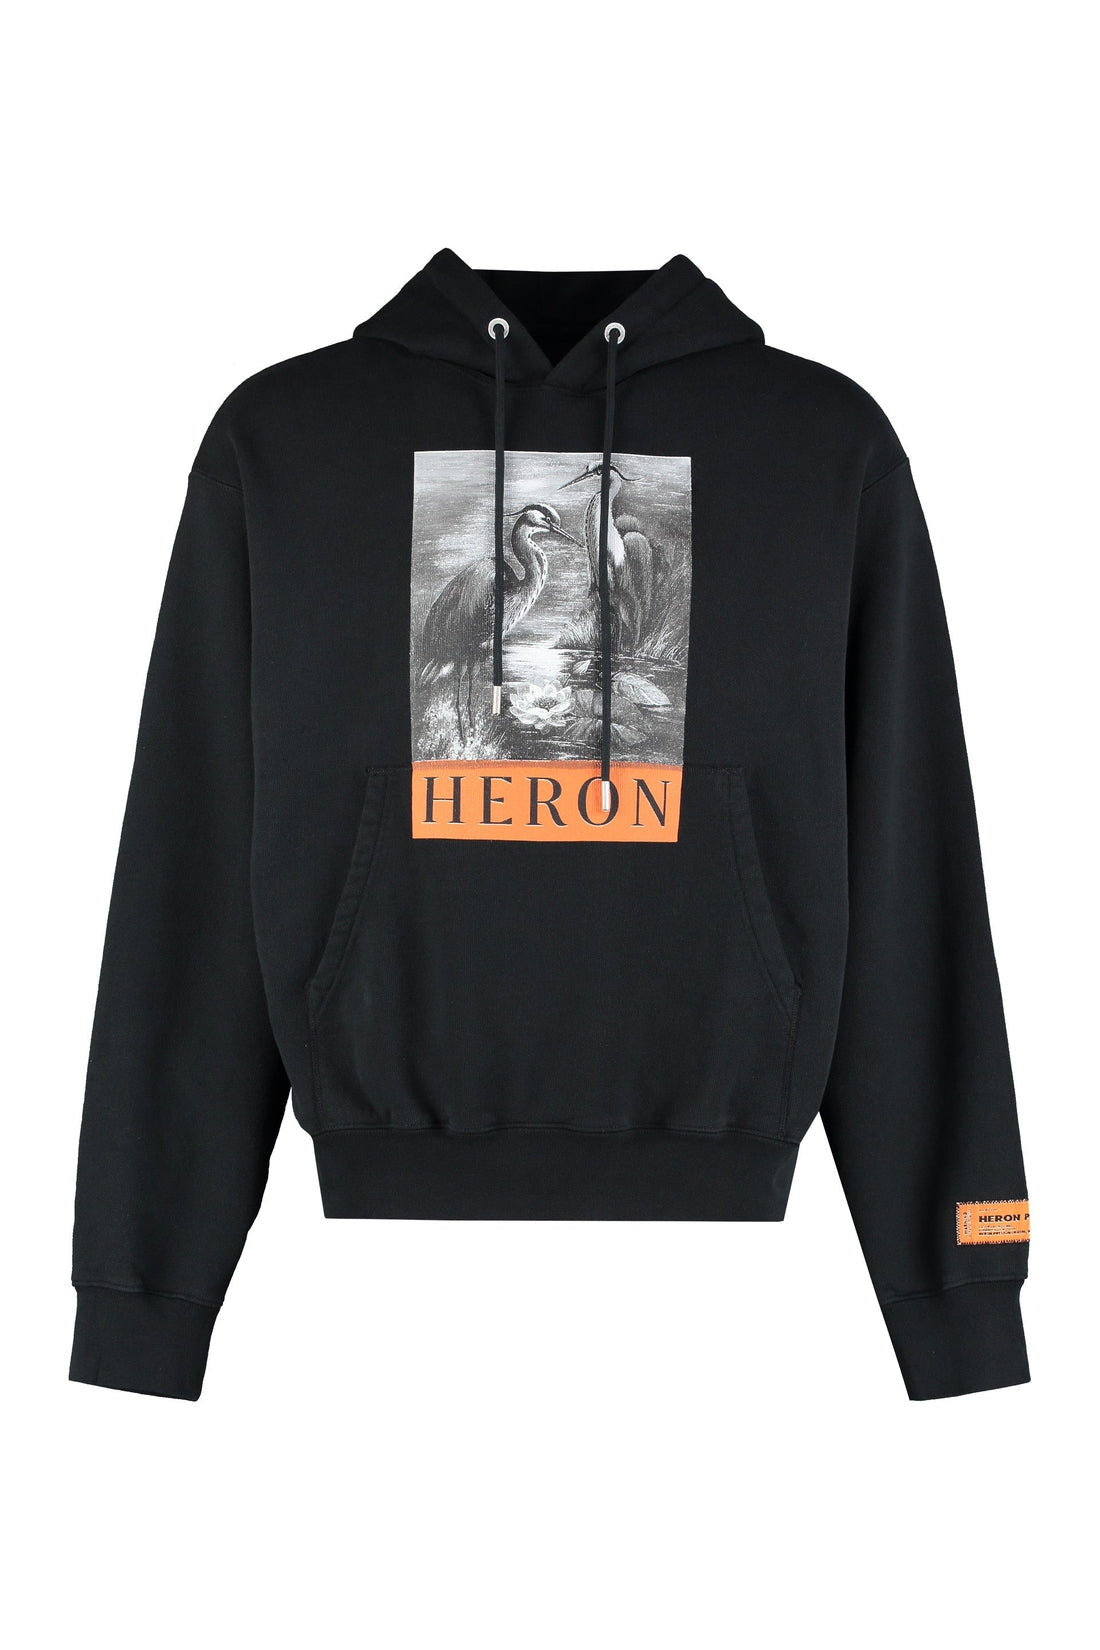 Heron Preston-OUTLET-SALE-Printed hoodie-ARCHIVIST